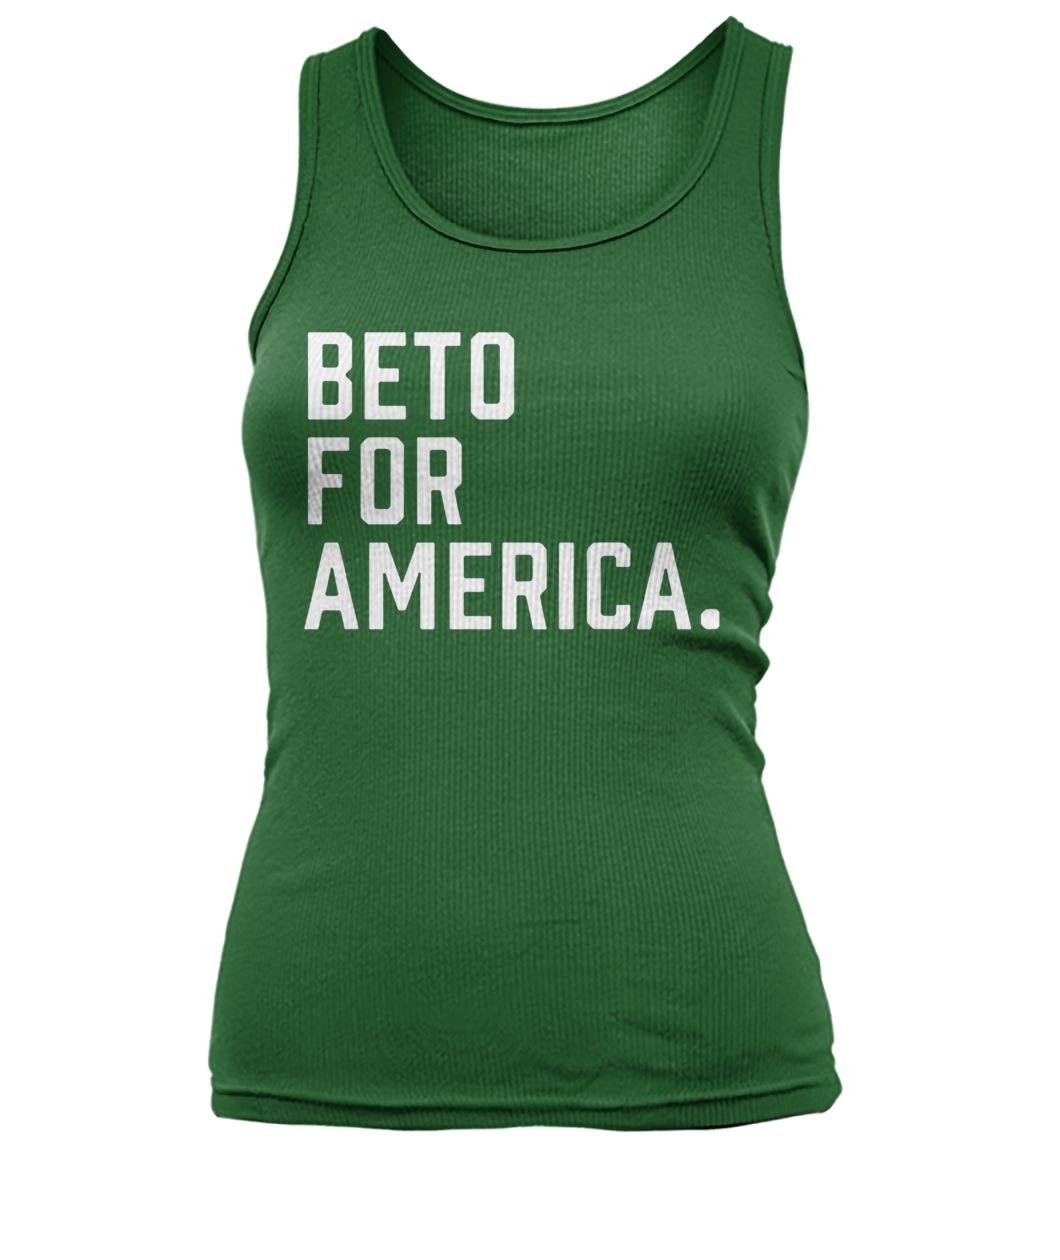 Beto o'rourke beto for america campaign women's tank top